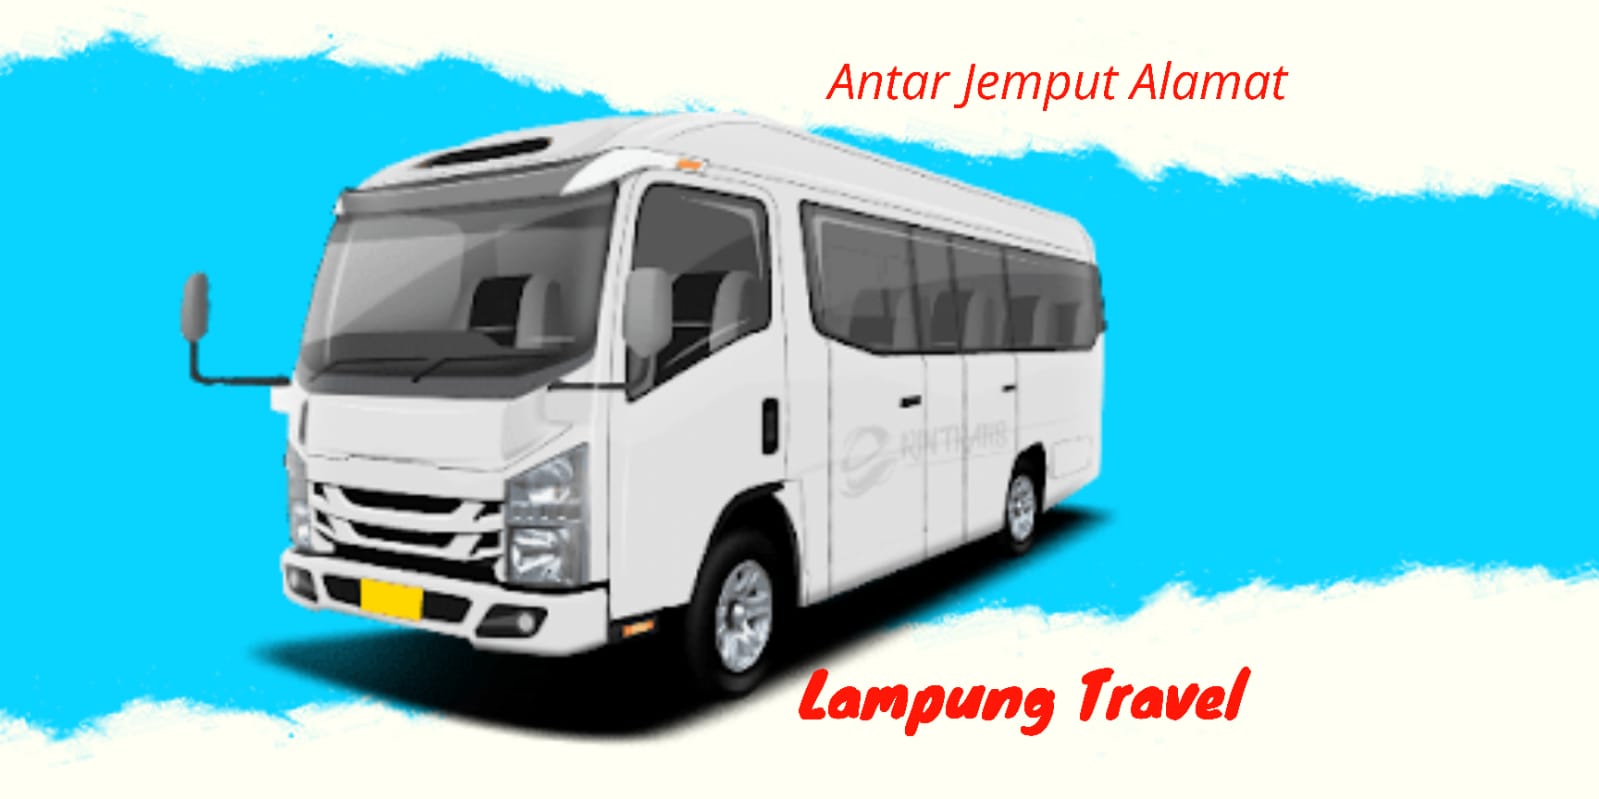 Travel Lampung Pondok Gede Cipayung